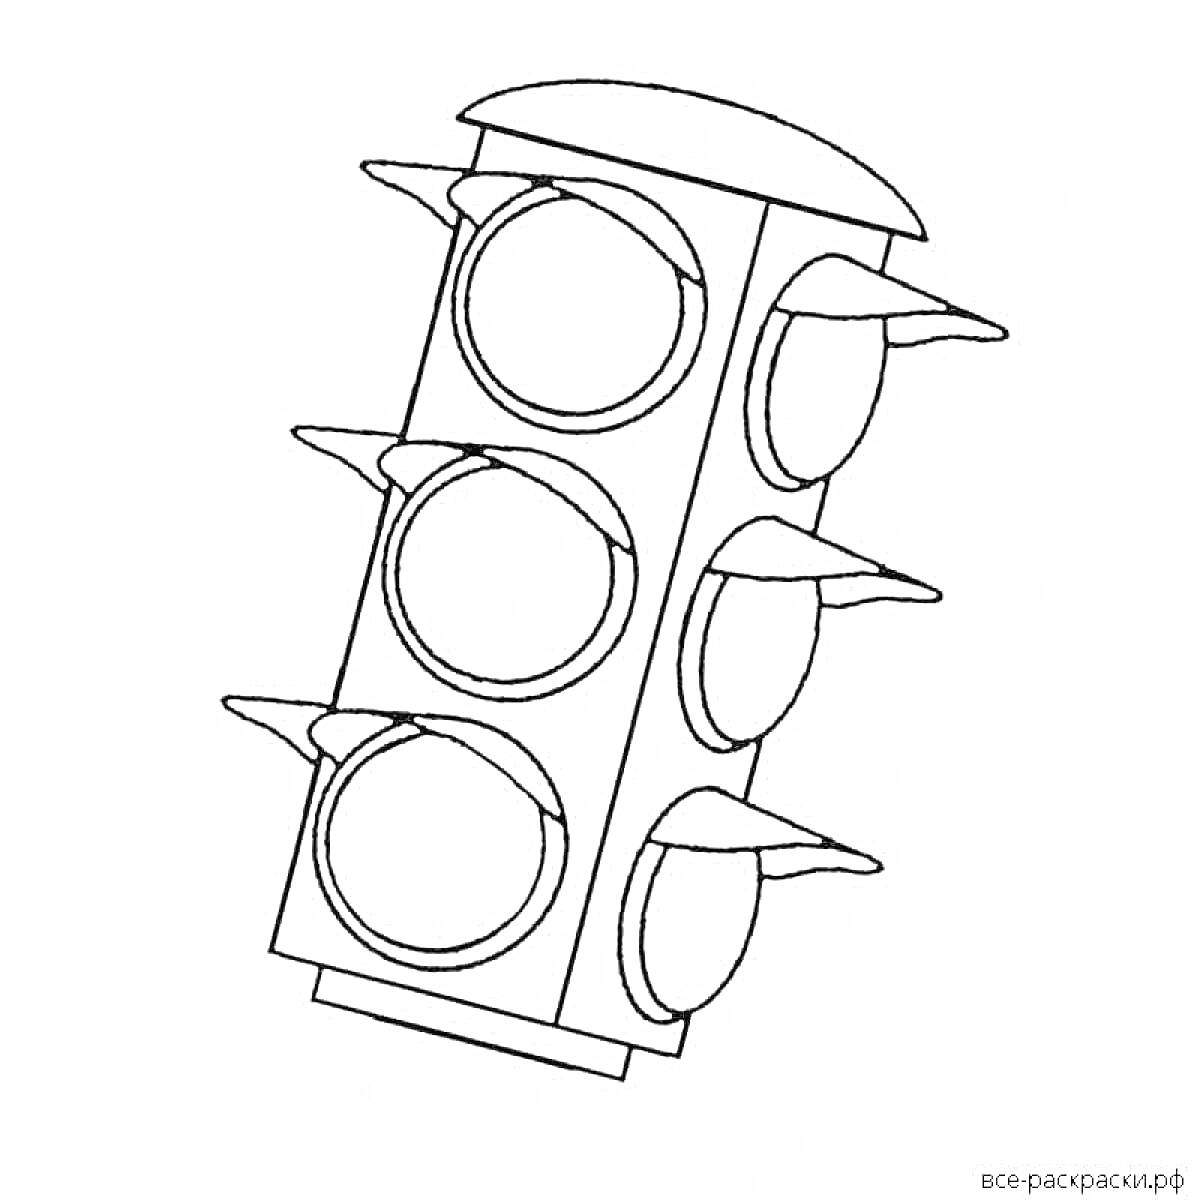 Раскраска Светофор с шестью круглыми секциями и козырьками